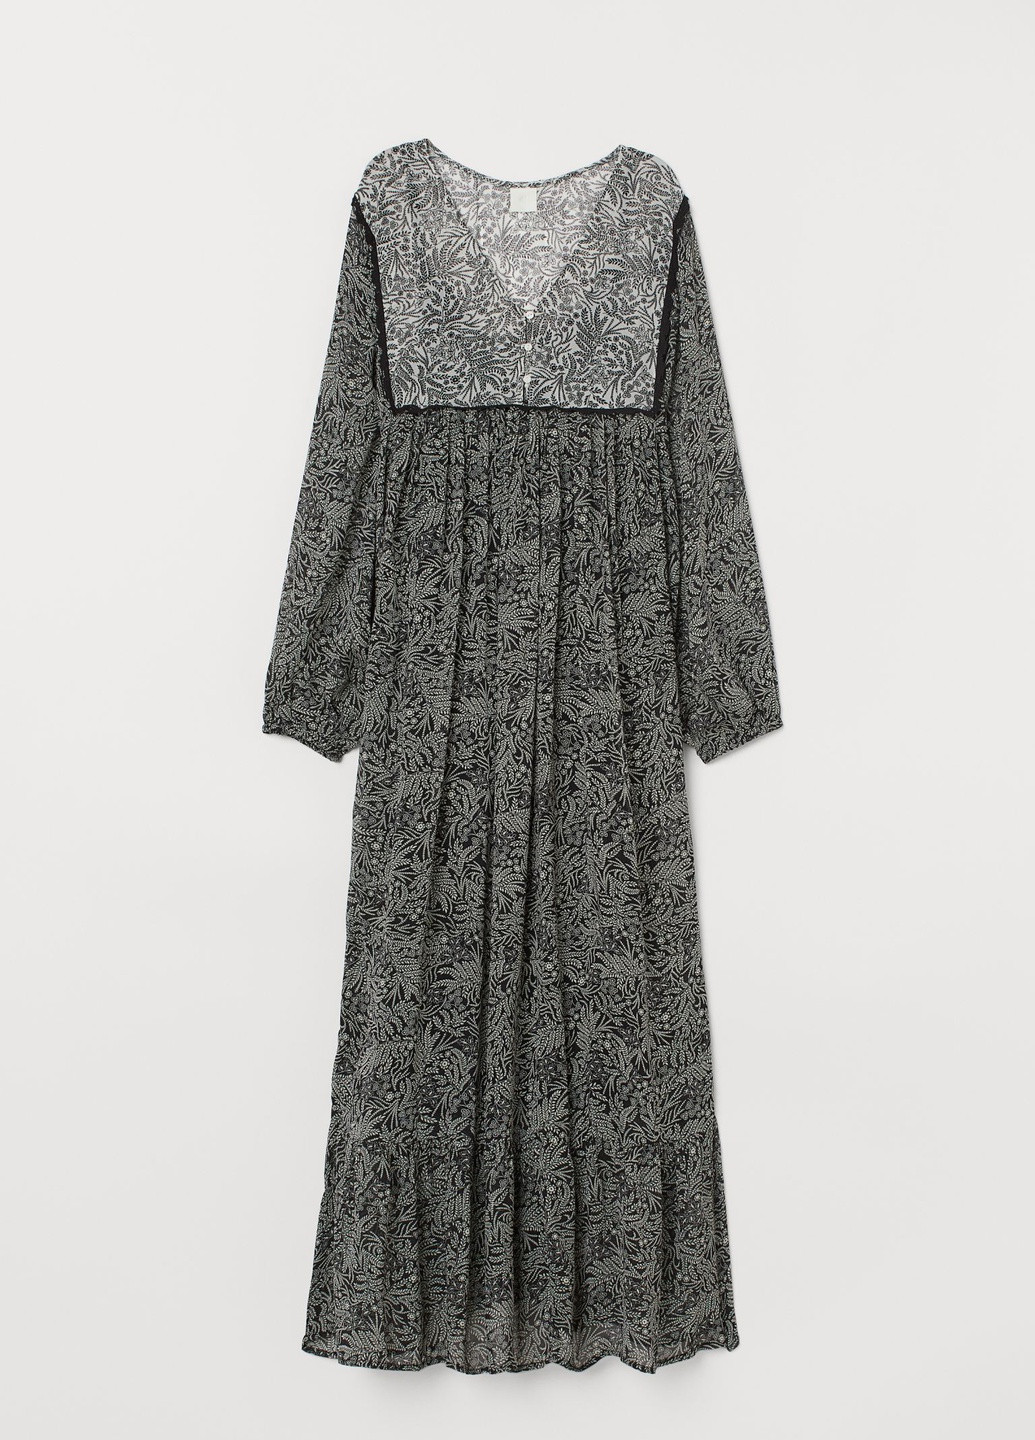 Черно-белое вечернее платье H&M с орнаментом